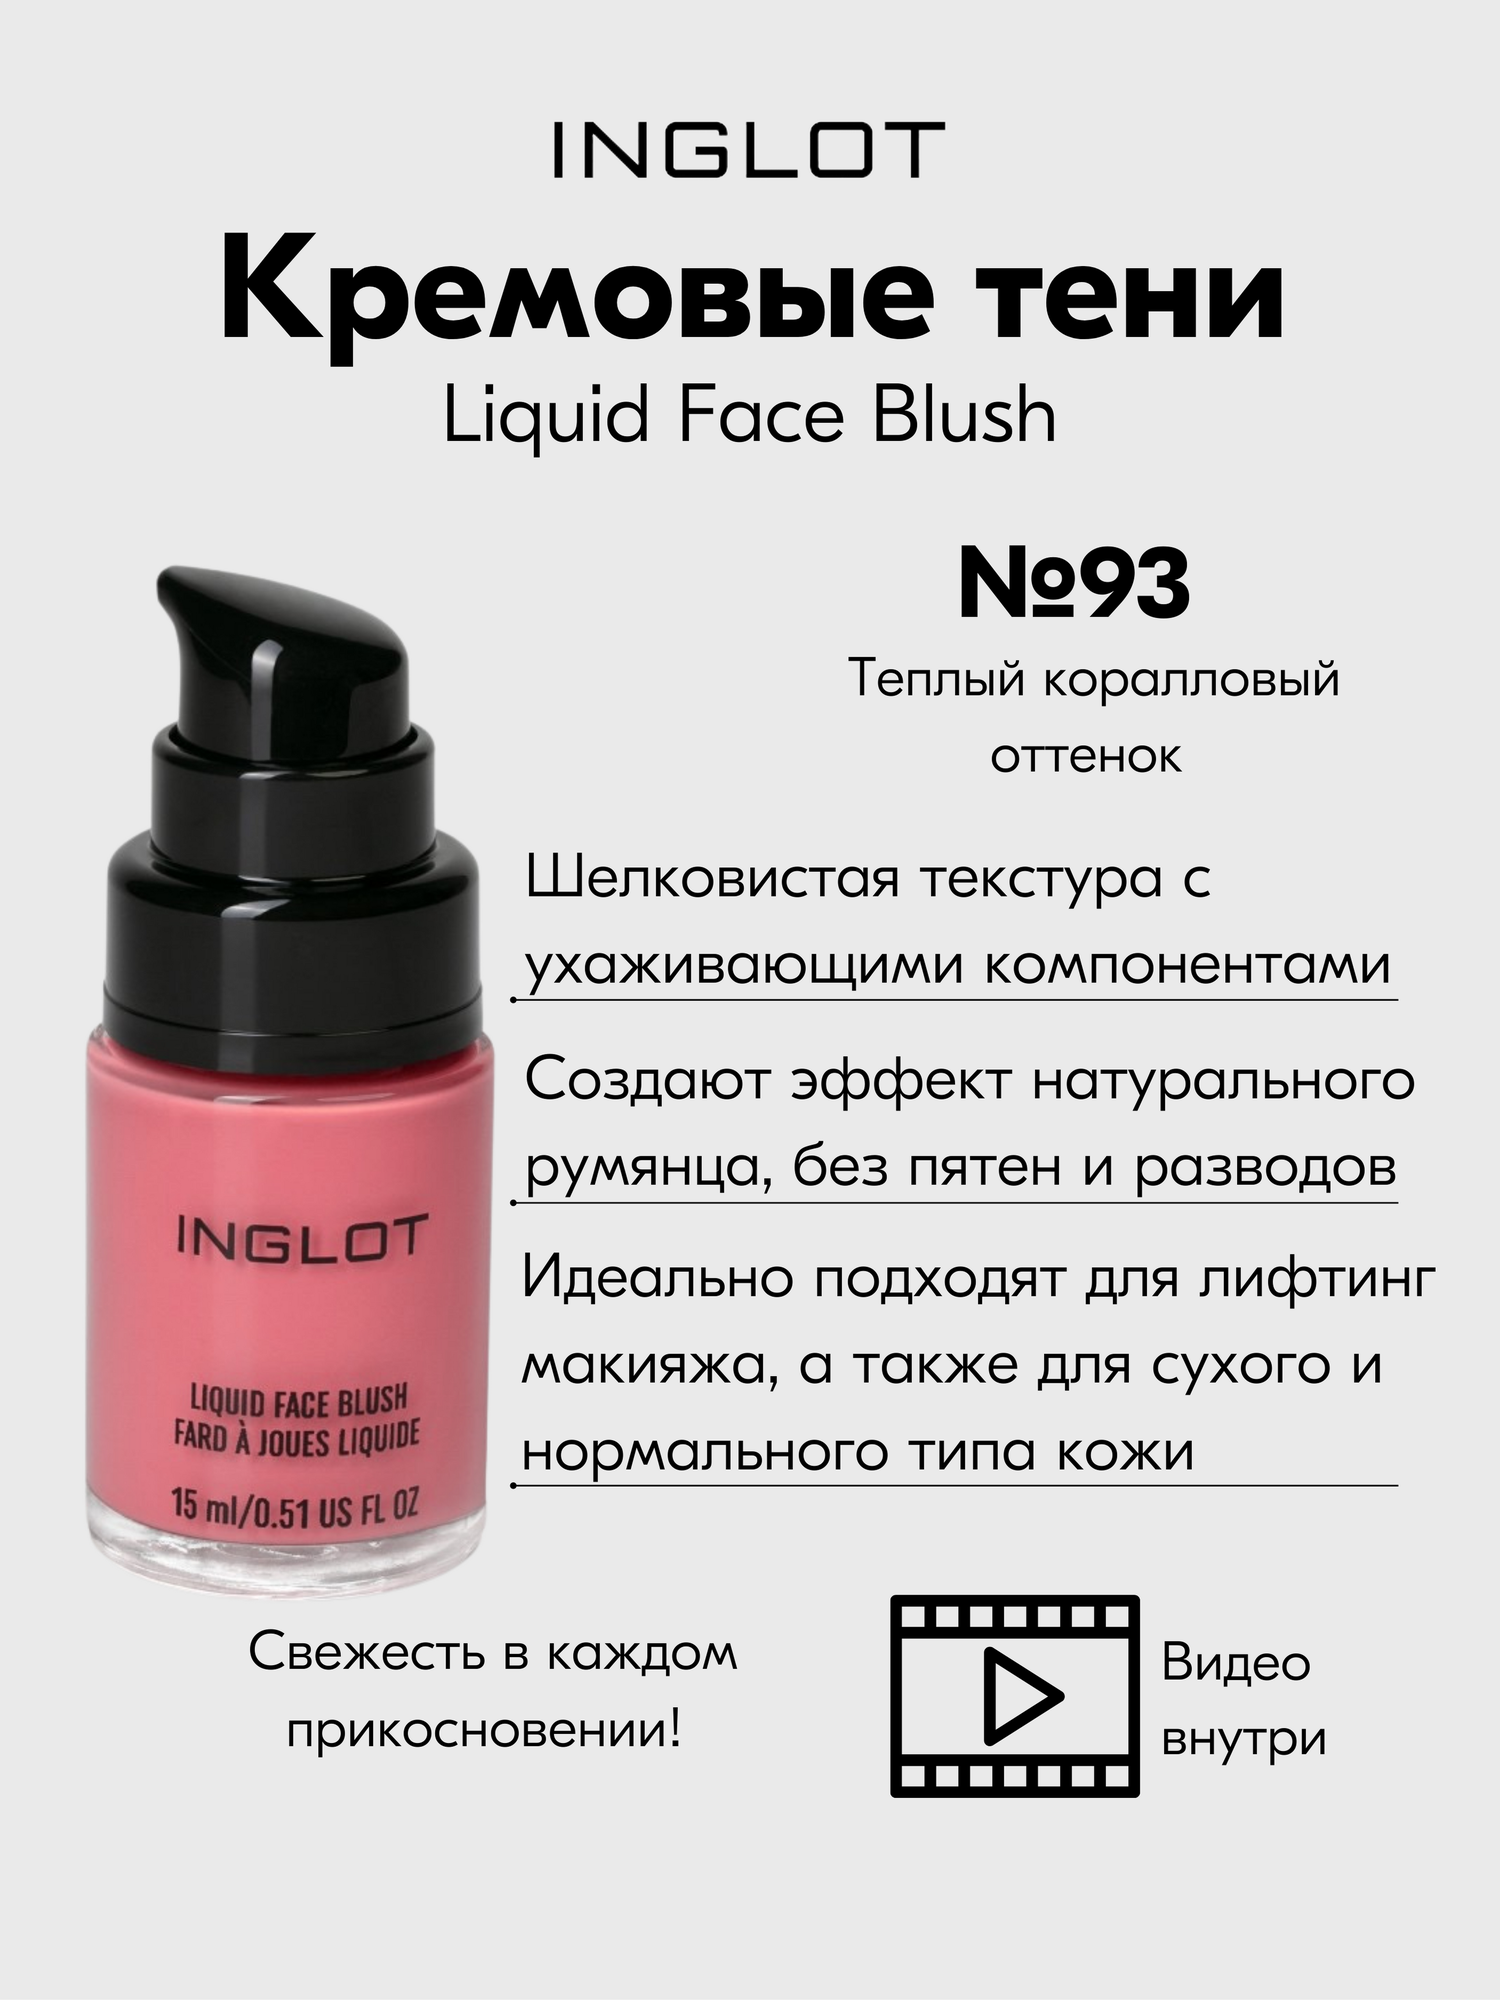 Кремовые румяна INGLOT нежный и стойкий эффект, свежесть AMC Liquid face blush №93